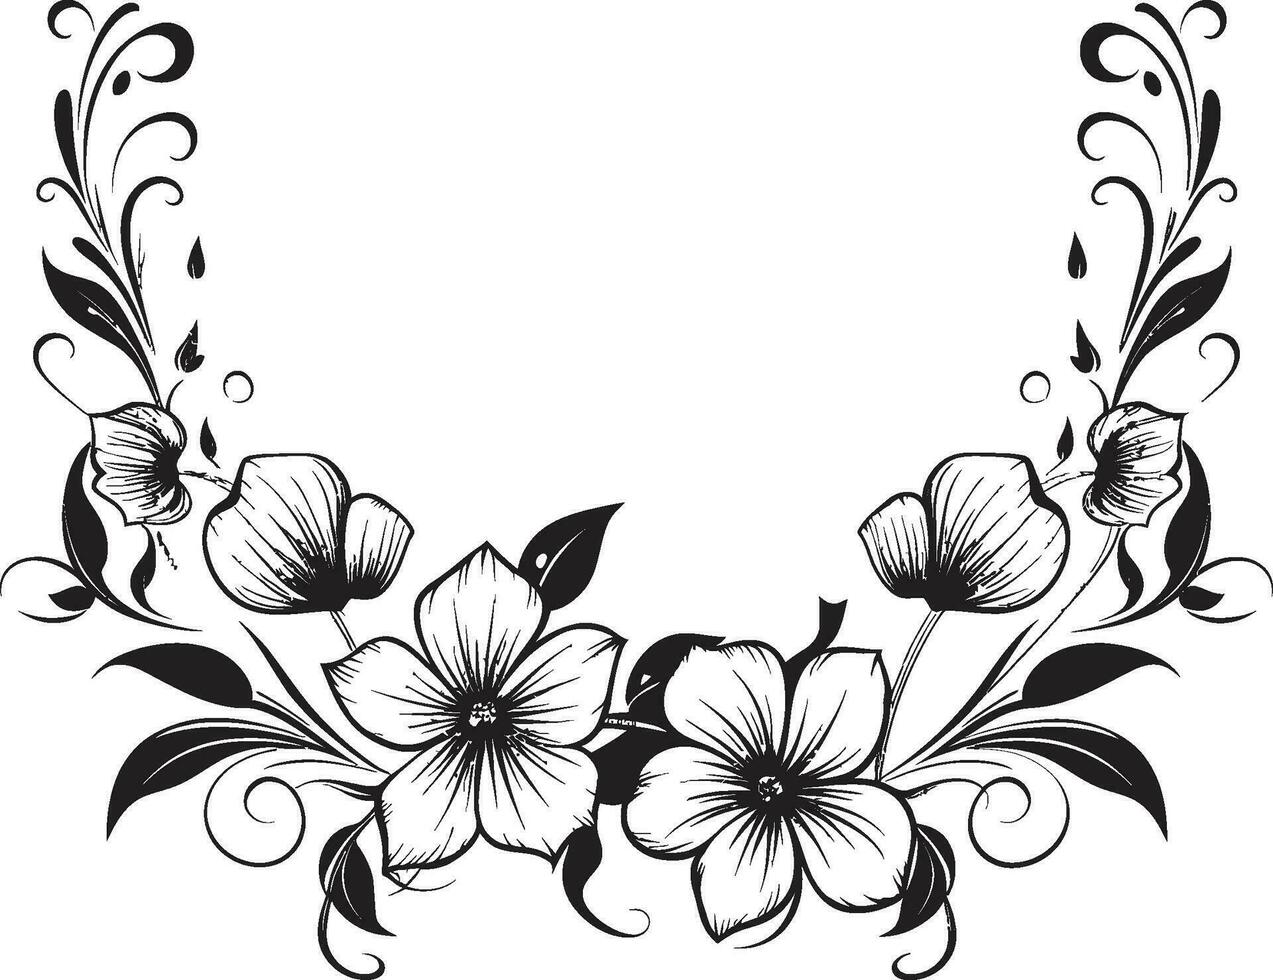 Natures Sketchbook Black Vector Logo Handcrafted Botanica Floral Element Design